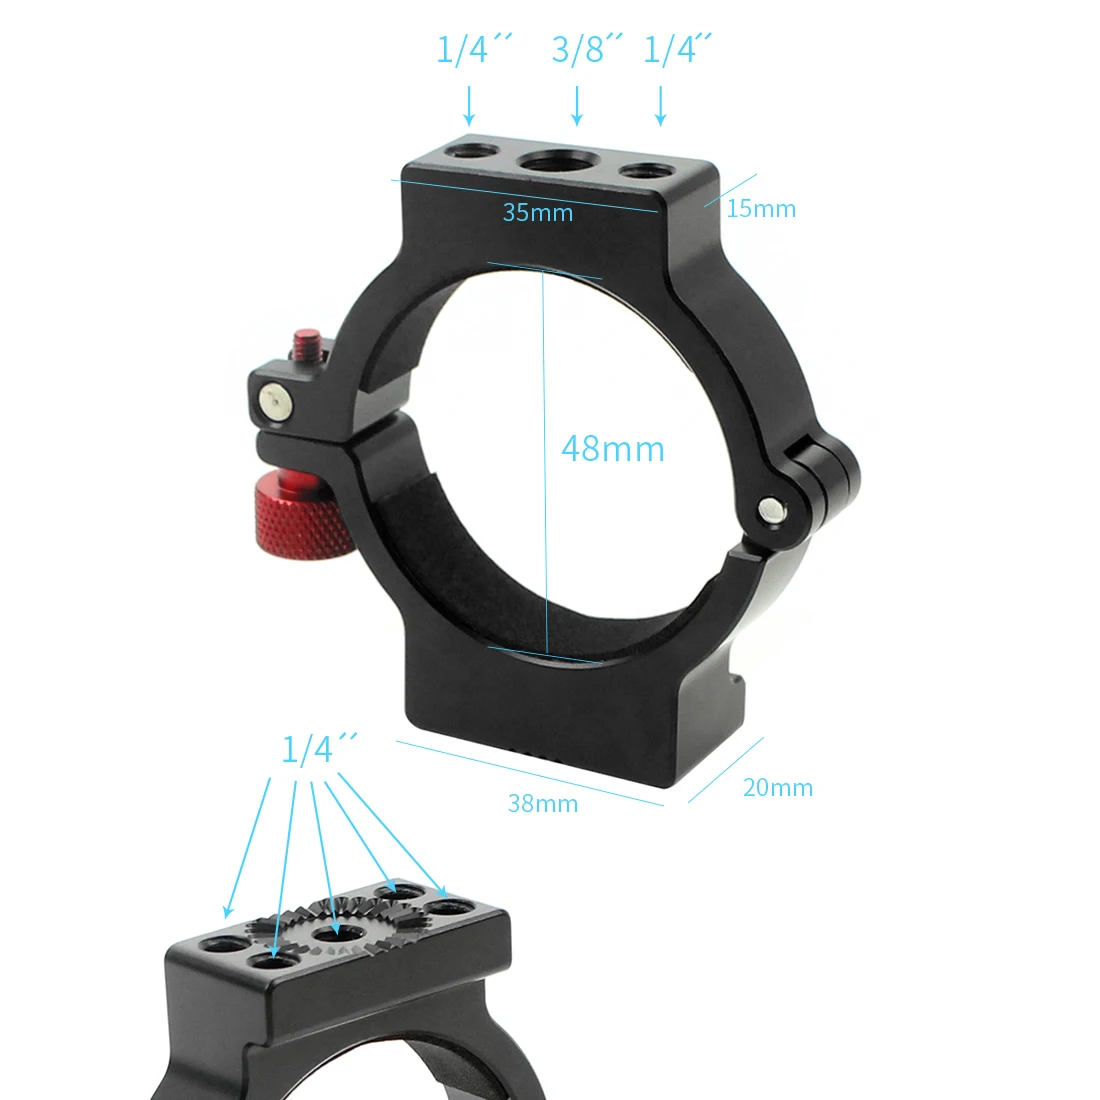 Стабилизатор фотографии расширение клип кольцо Крепление Адаптер для SLR камеры монитор Mic светодиодный свет для DJI Ronin S Gimbal аксессуар